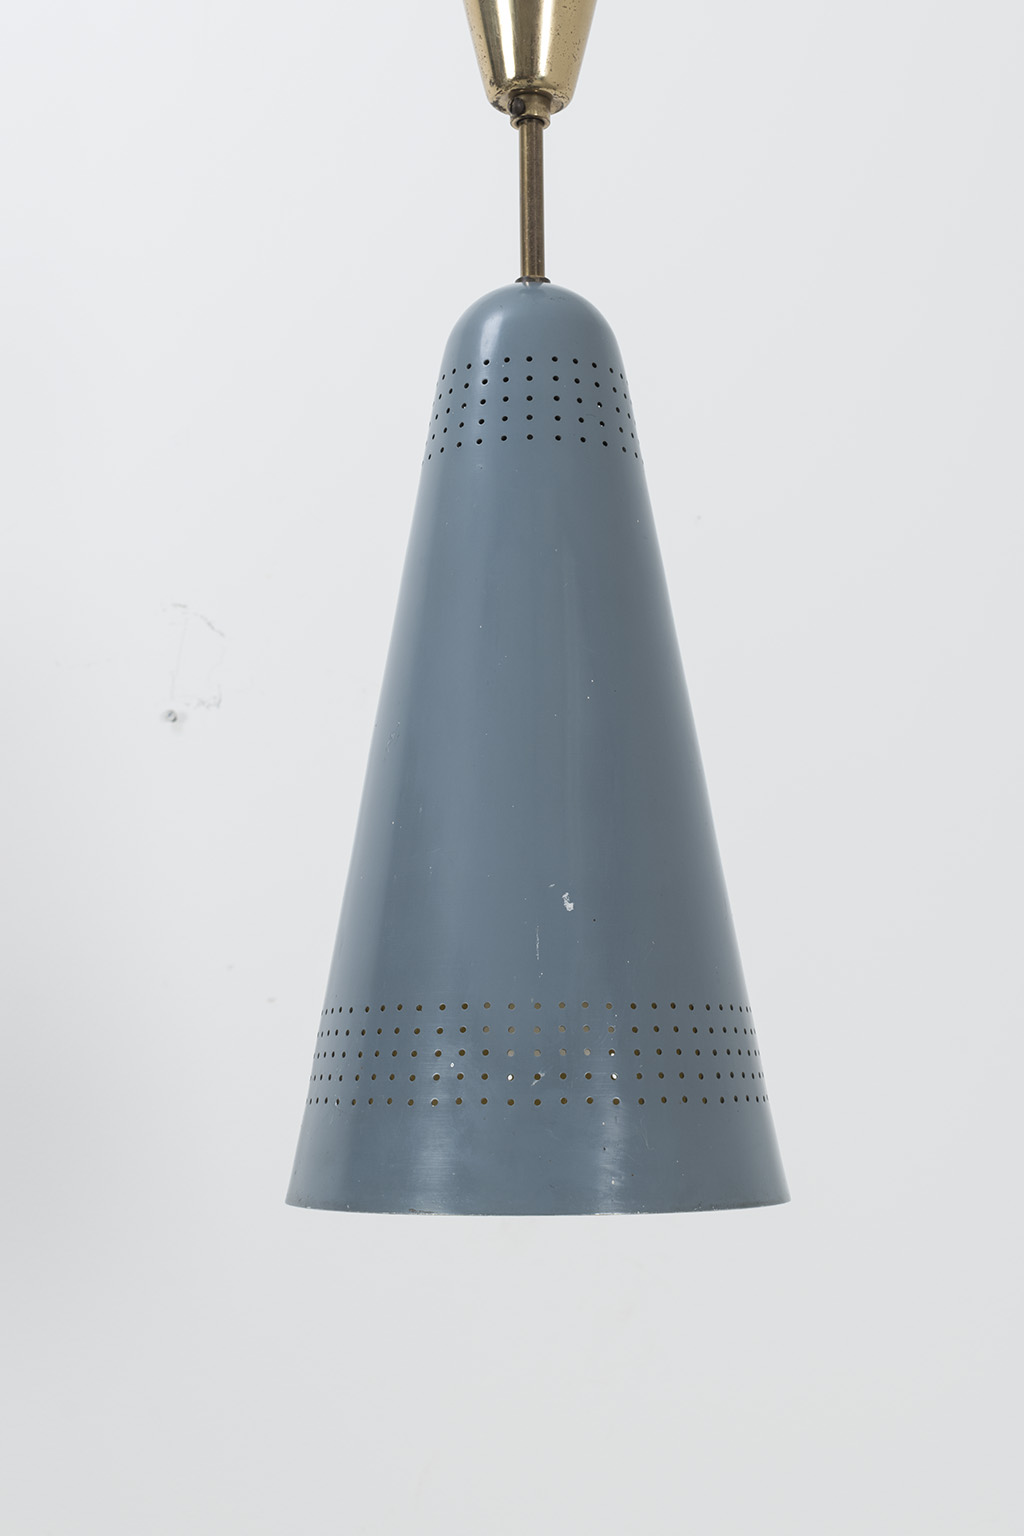 Italian pendant lamp